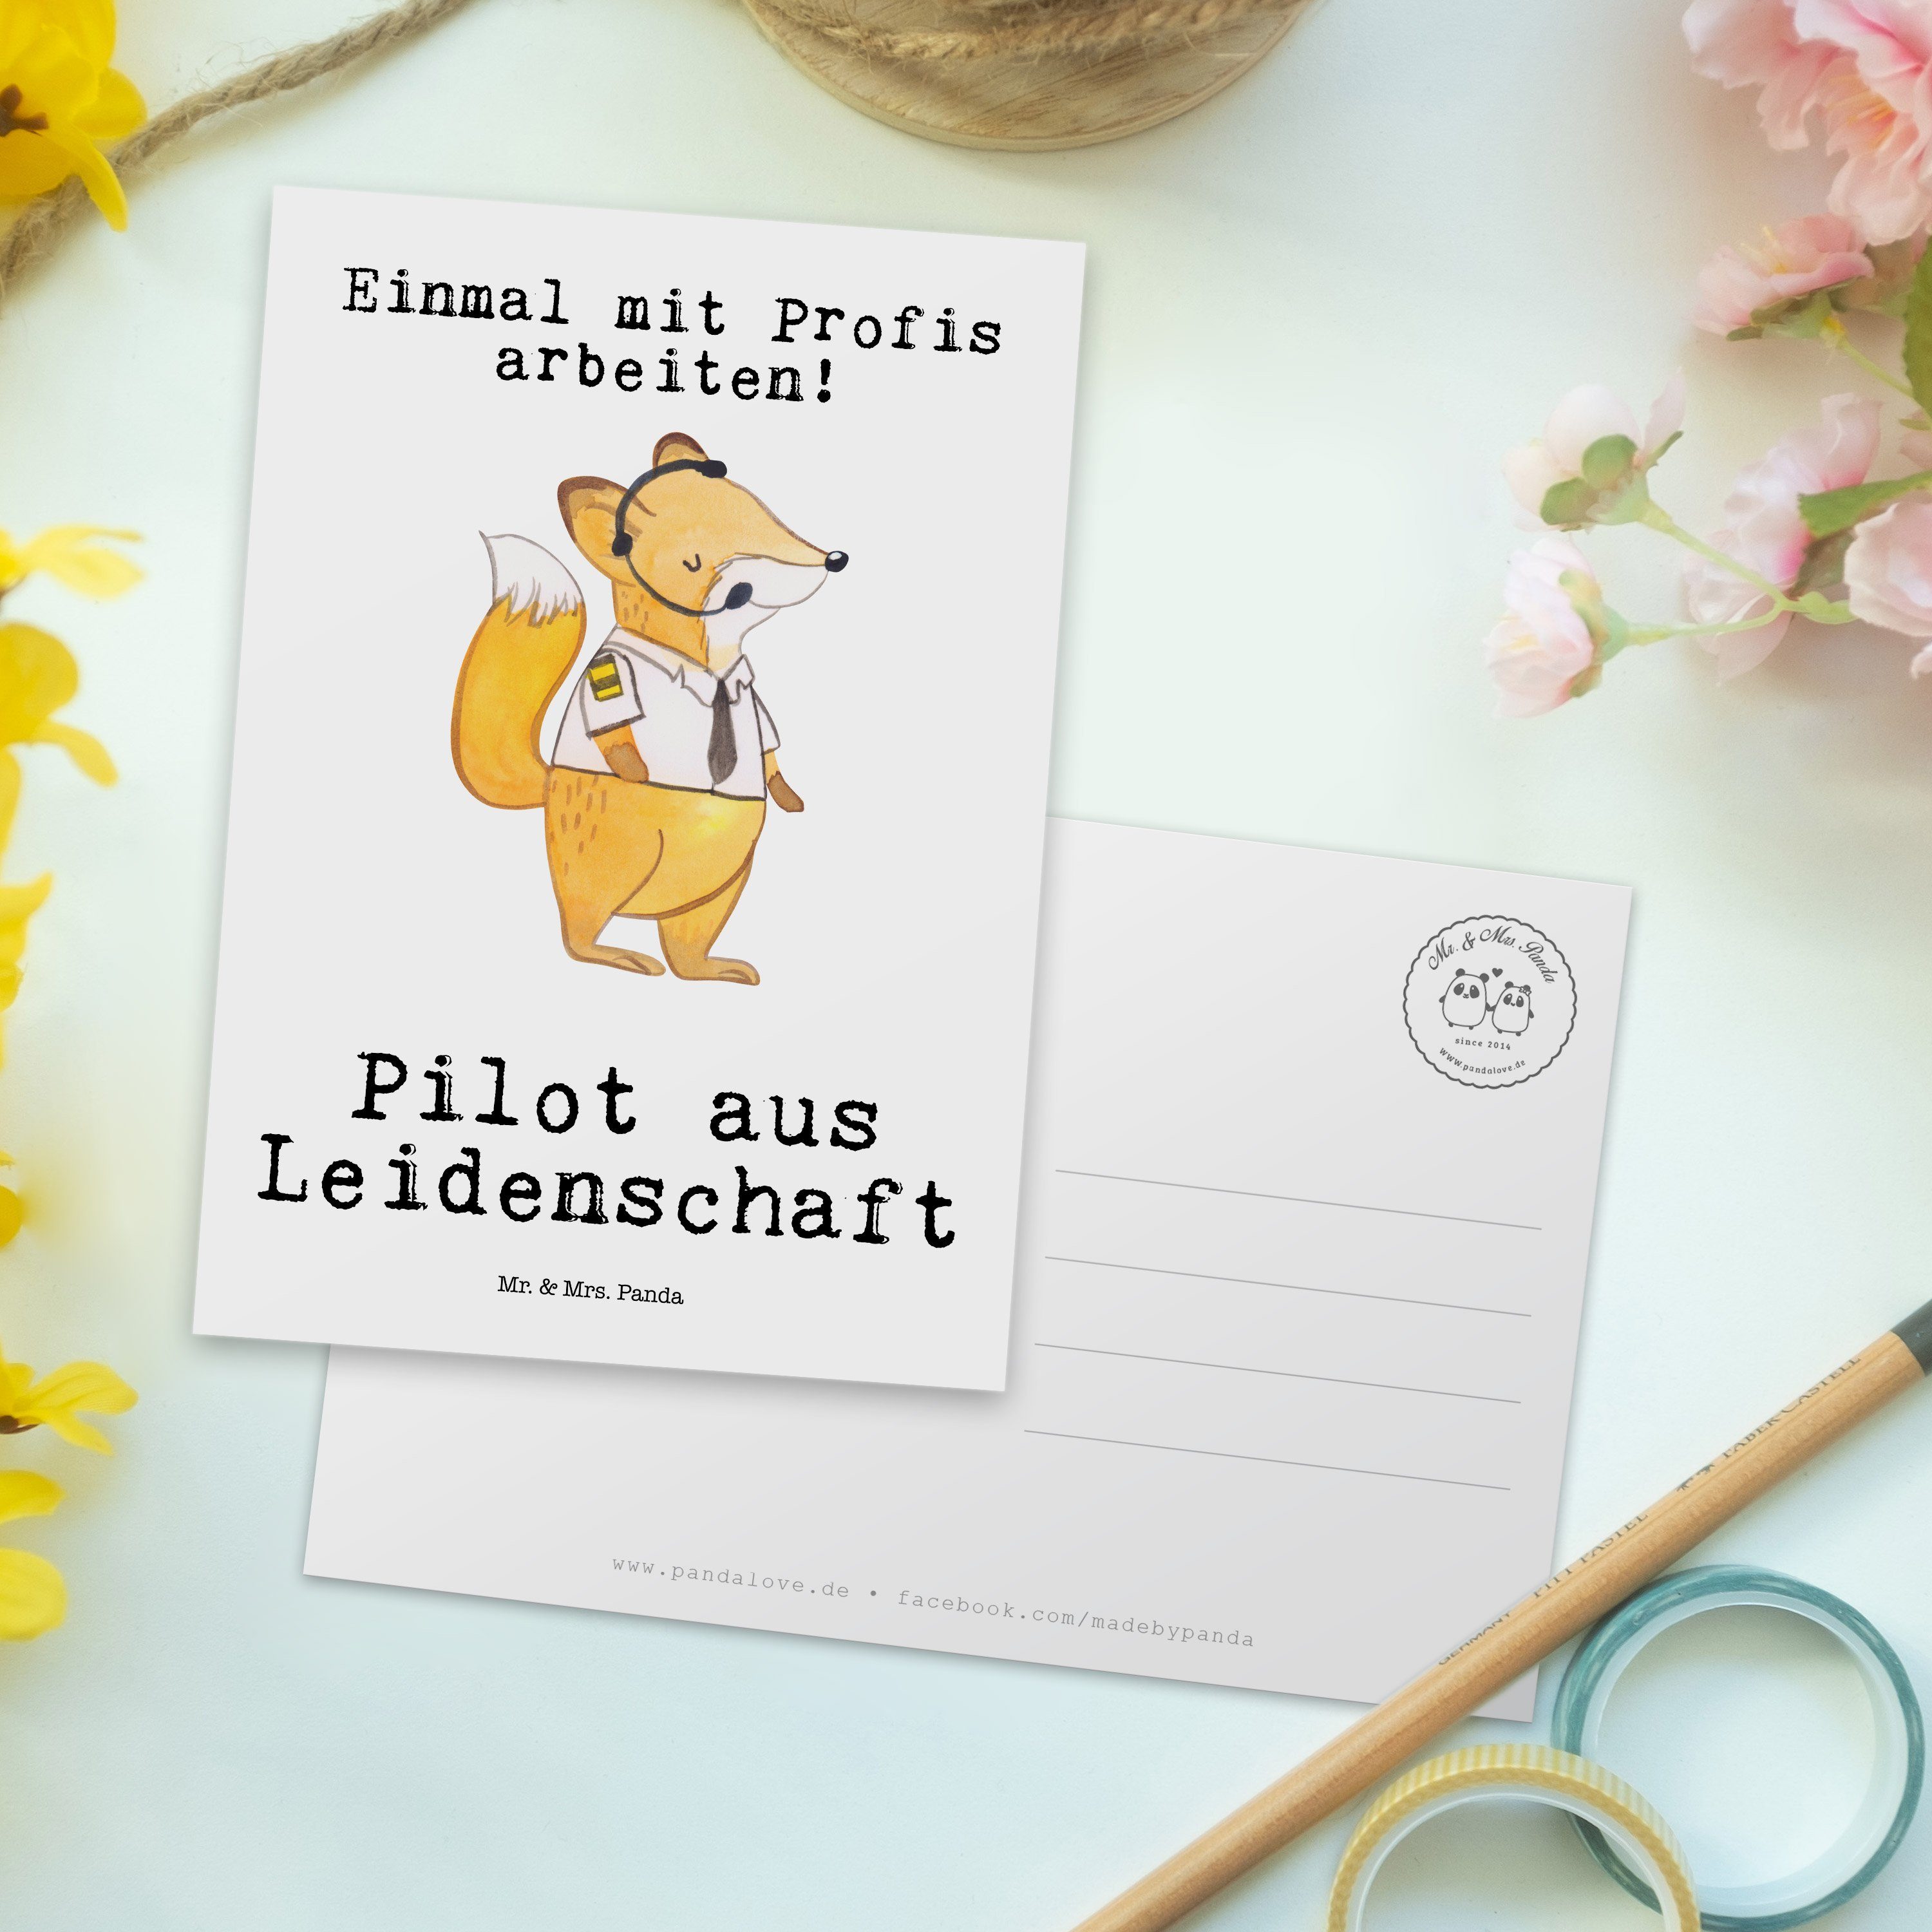 Mr. - Weiß Mrs. aus & - Arbeitsk Postkarte Schenken, Geschenk, Panda Pilot Cockpit, Leidenschaft